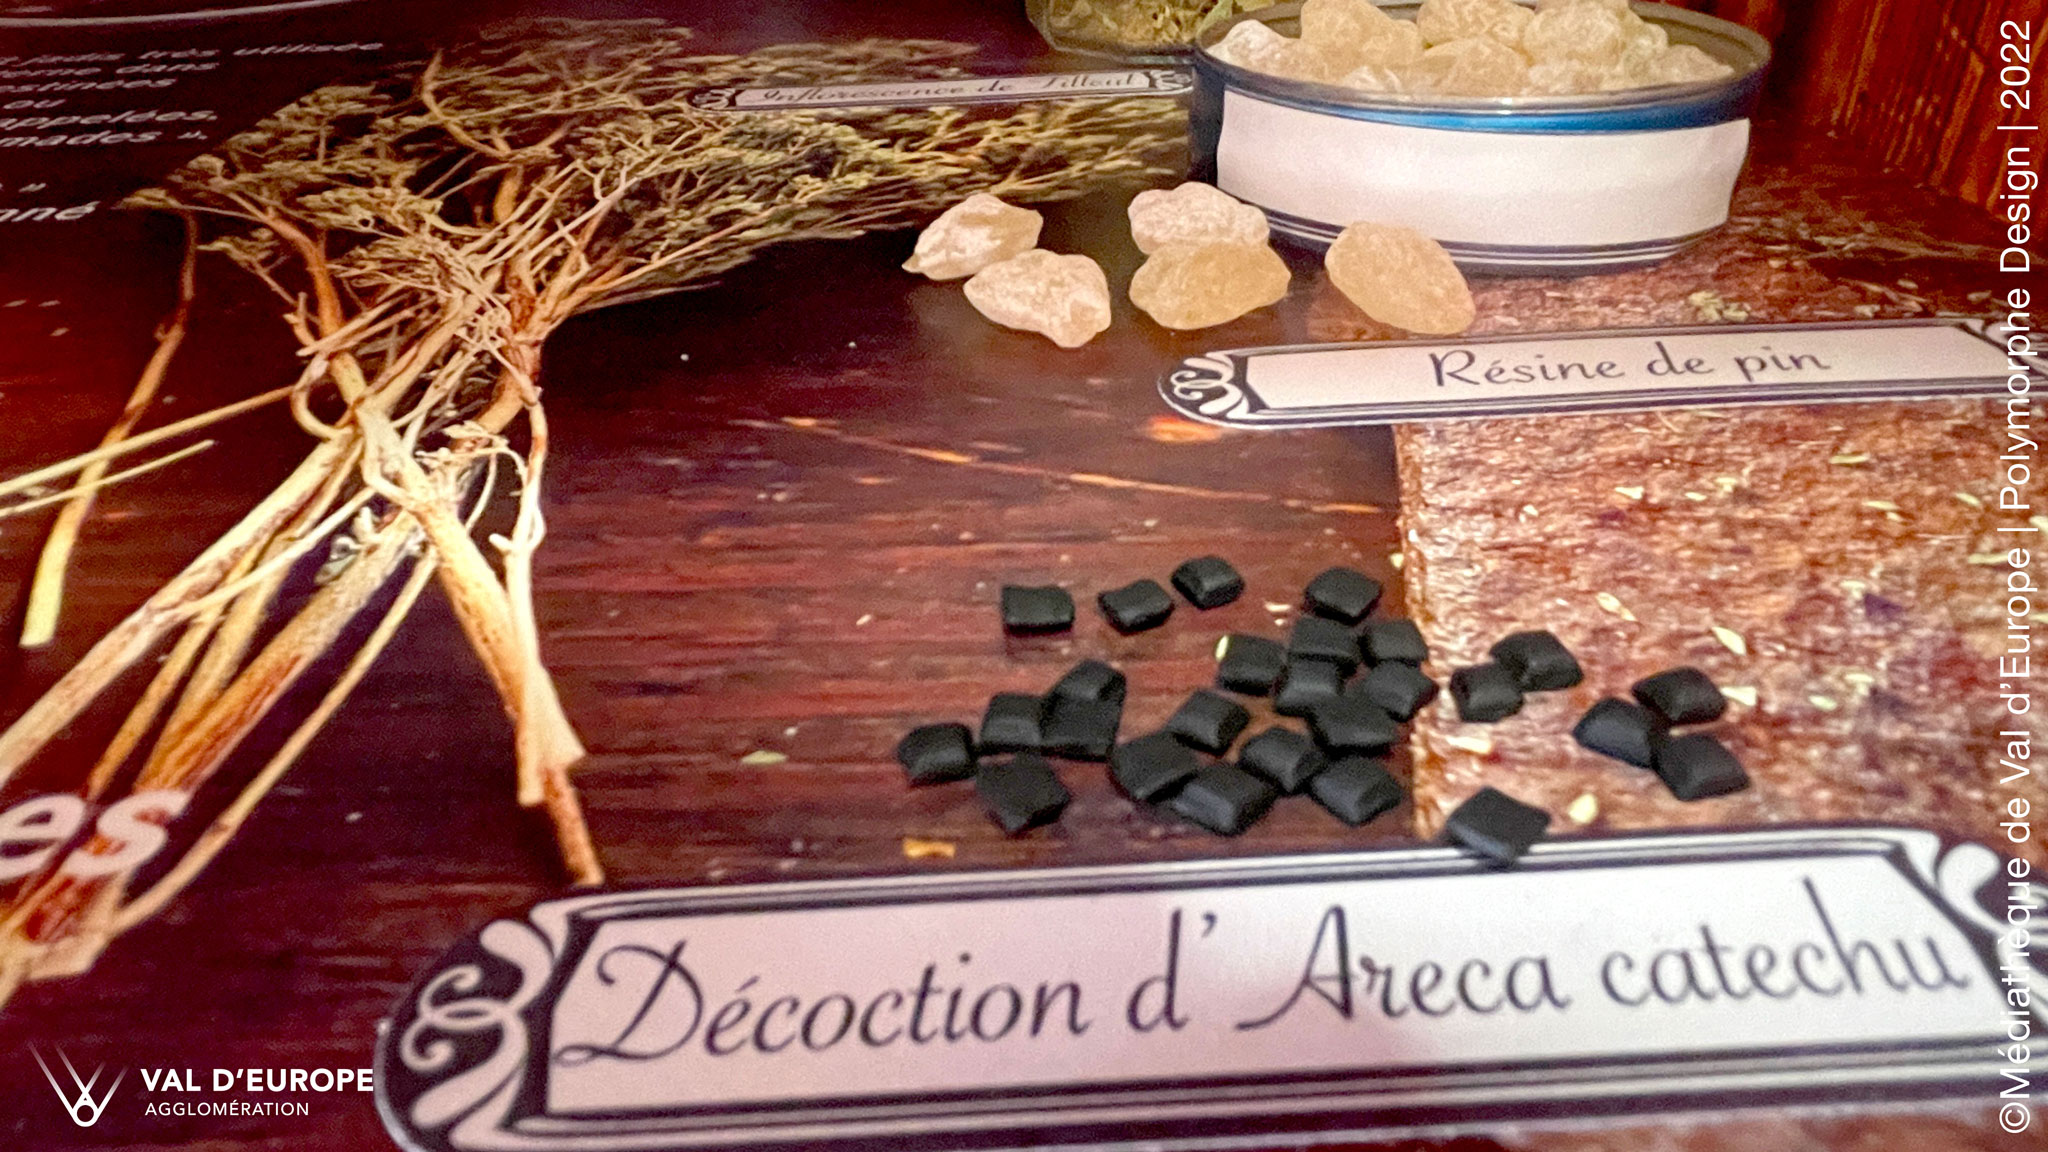 Décoction d'Areca catechu et Résine de pin, dans le mobilier d'exposition Sequoia le problème (l'arbre-apothicaire)